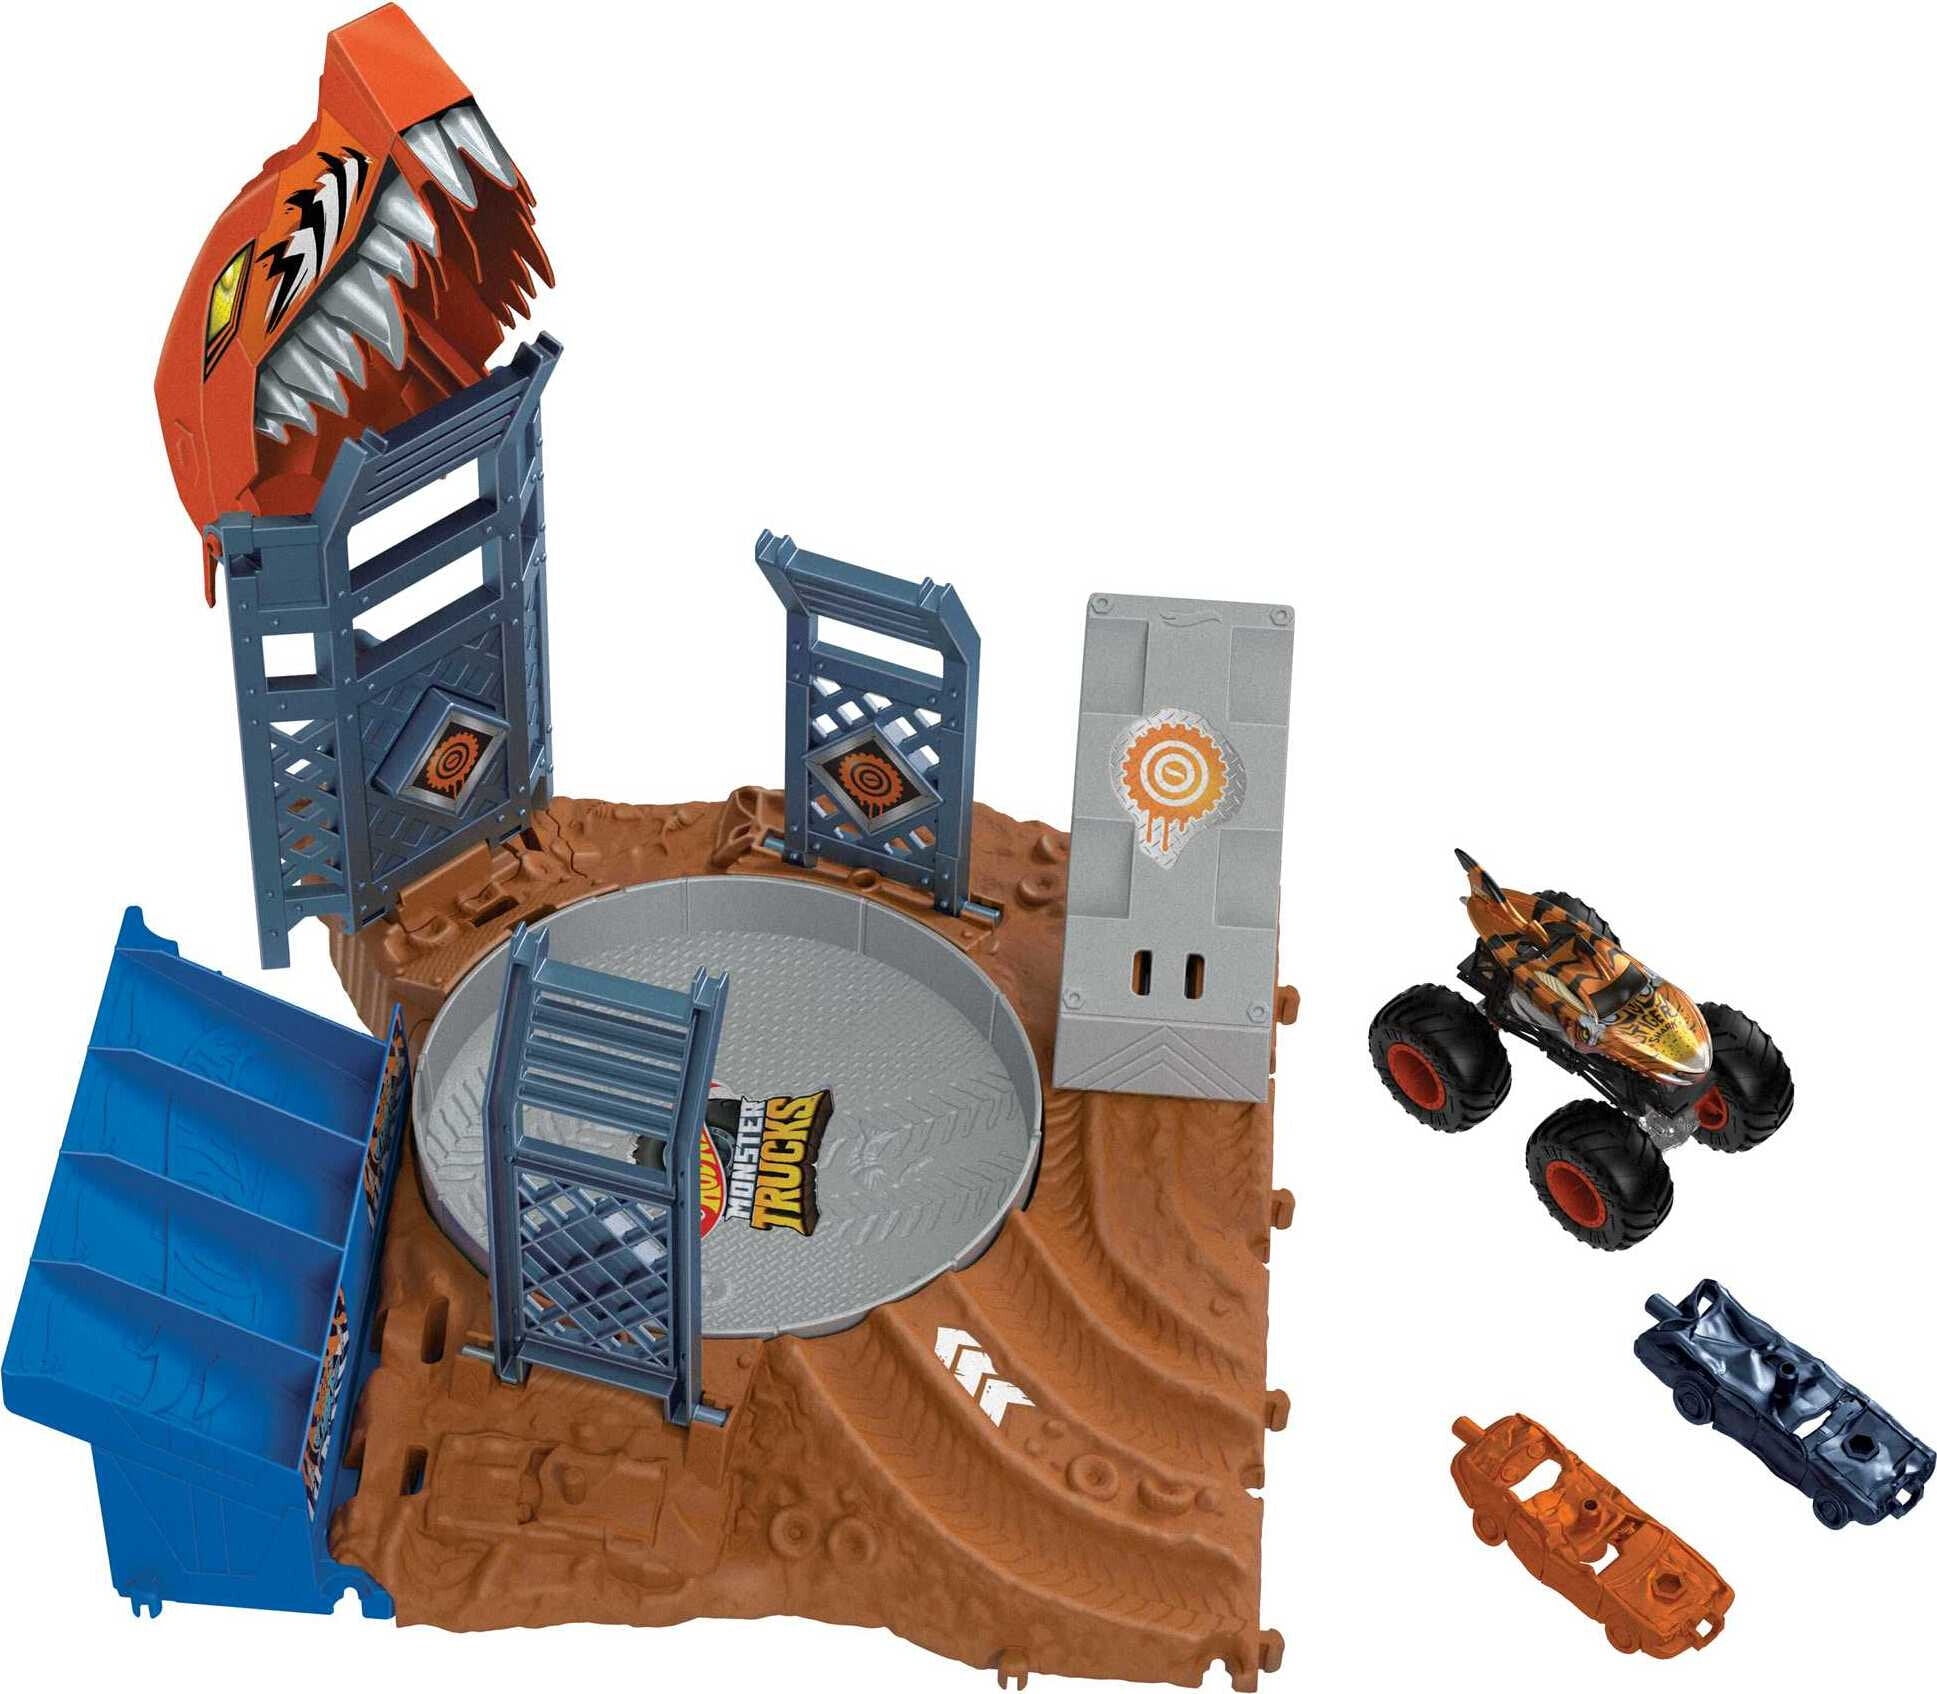 Hot Wheels Pista Monster Trucks Arena Smashers 2023 Mattel